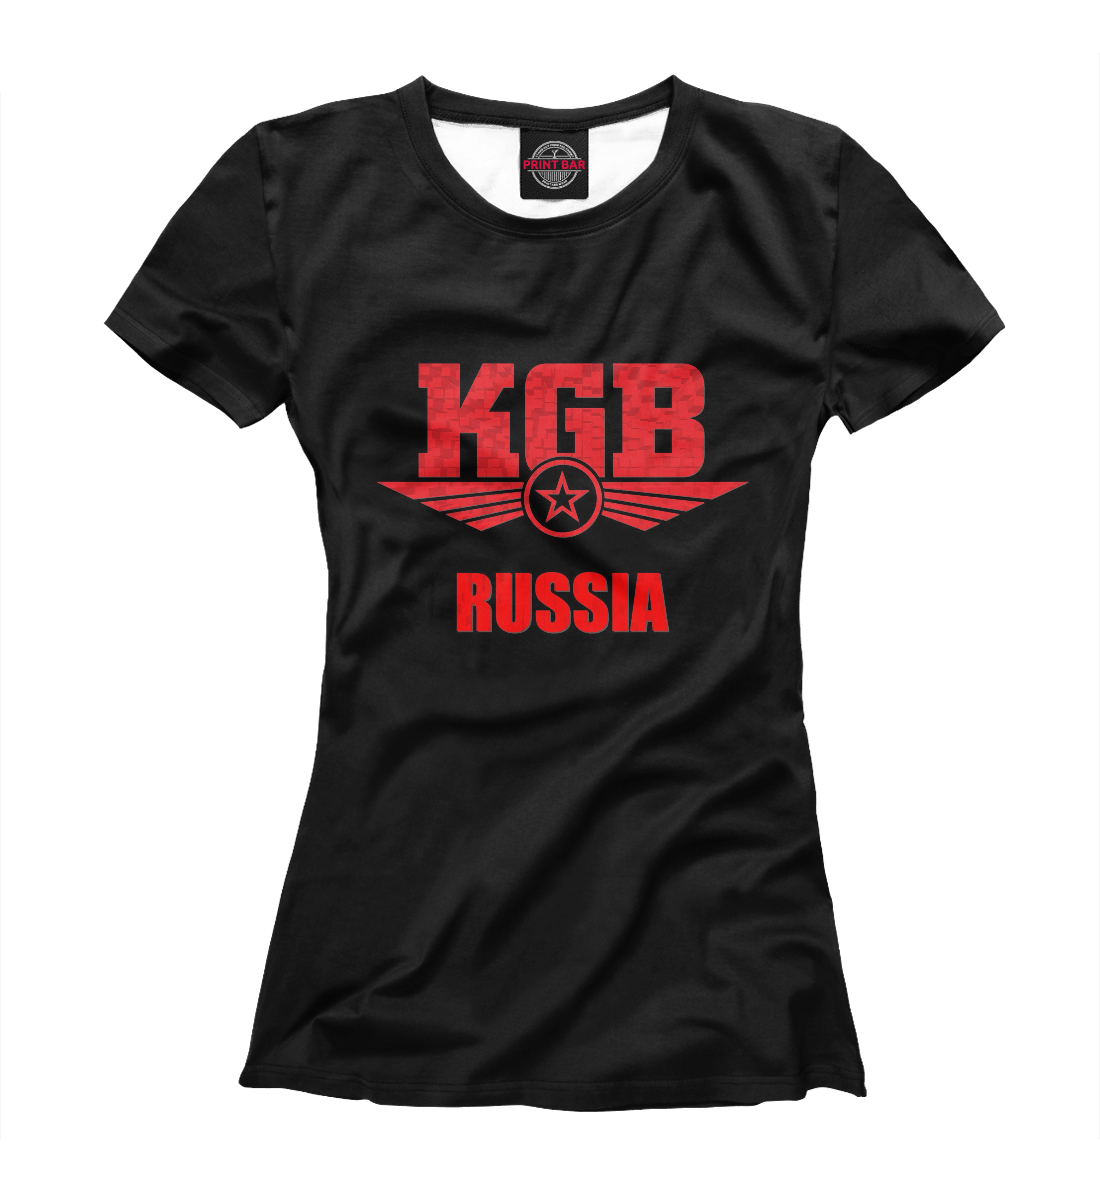 Футболка КГБ для девочек, артикул: PGR-376106-fut-1mp